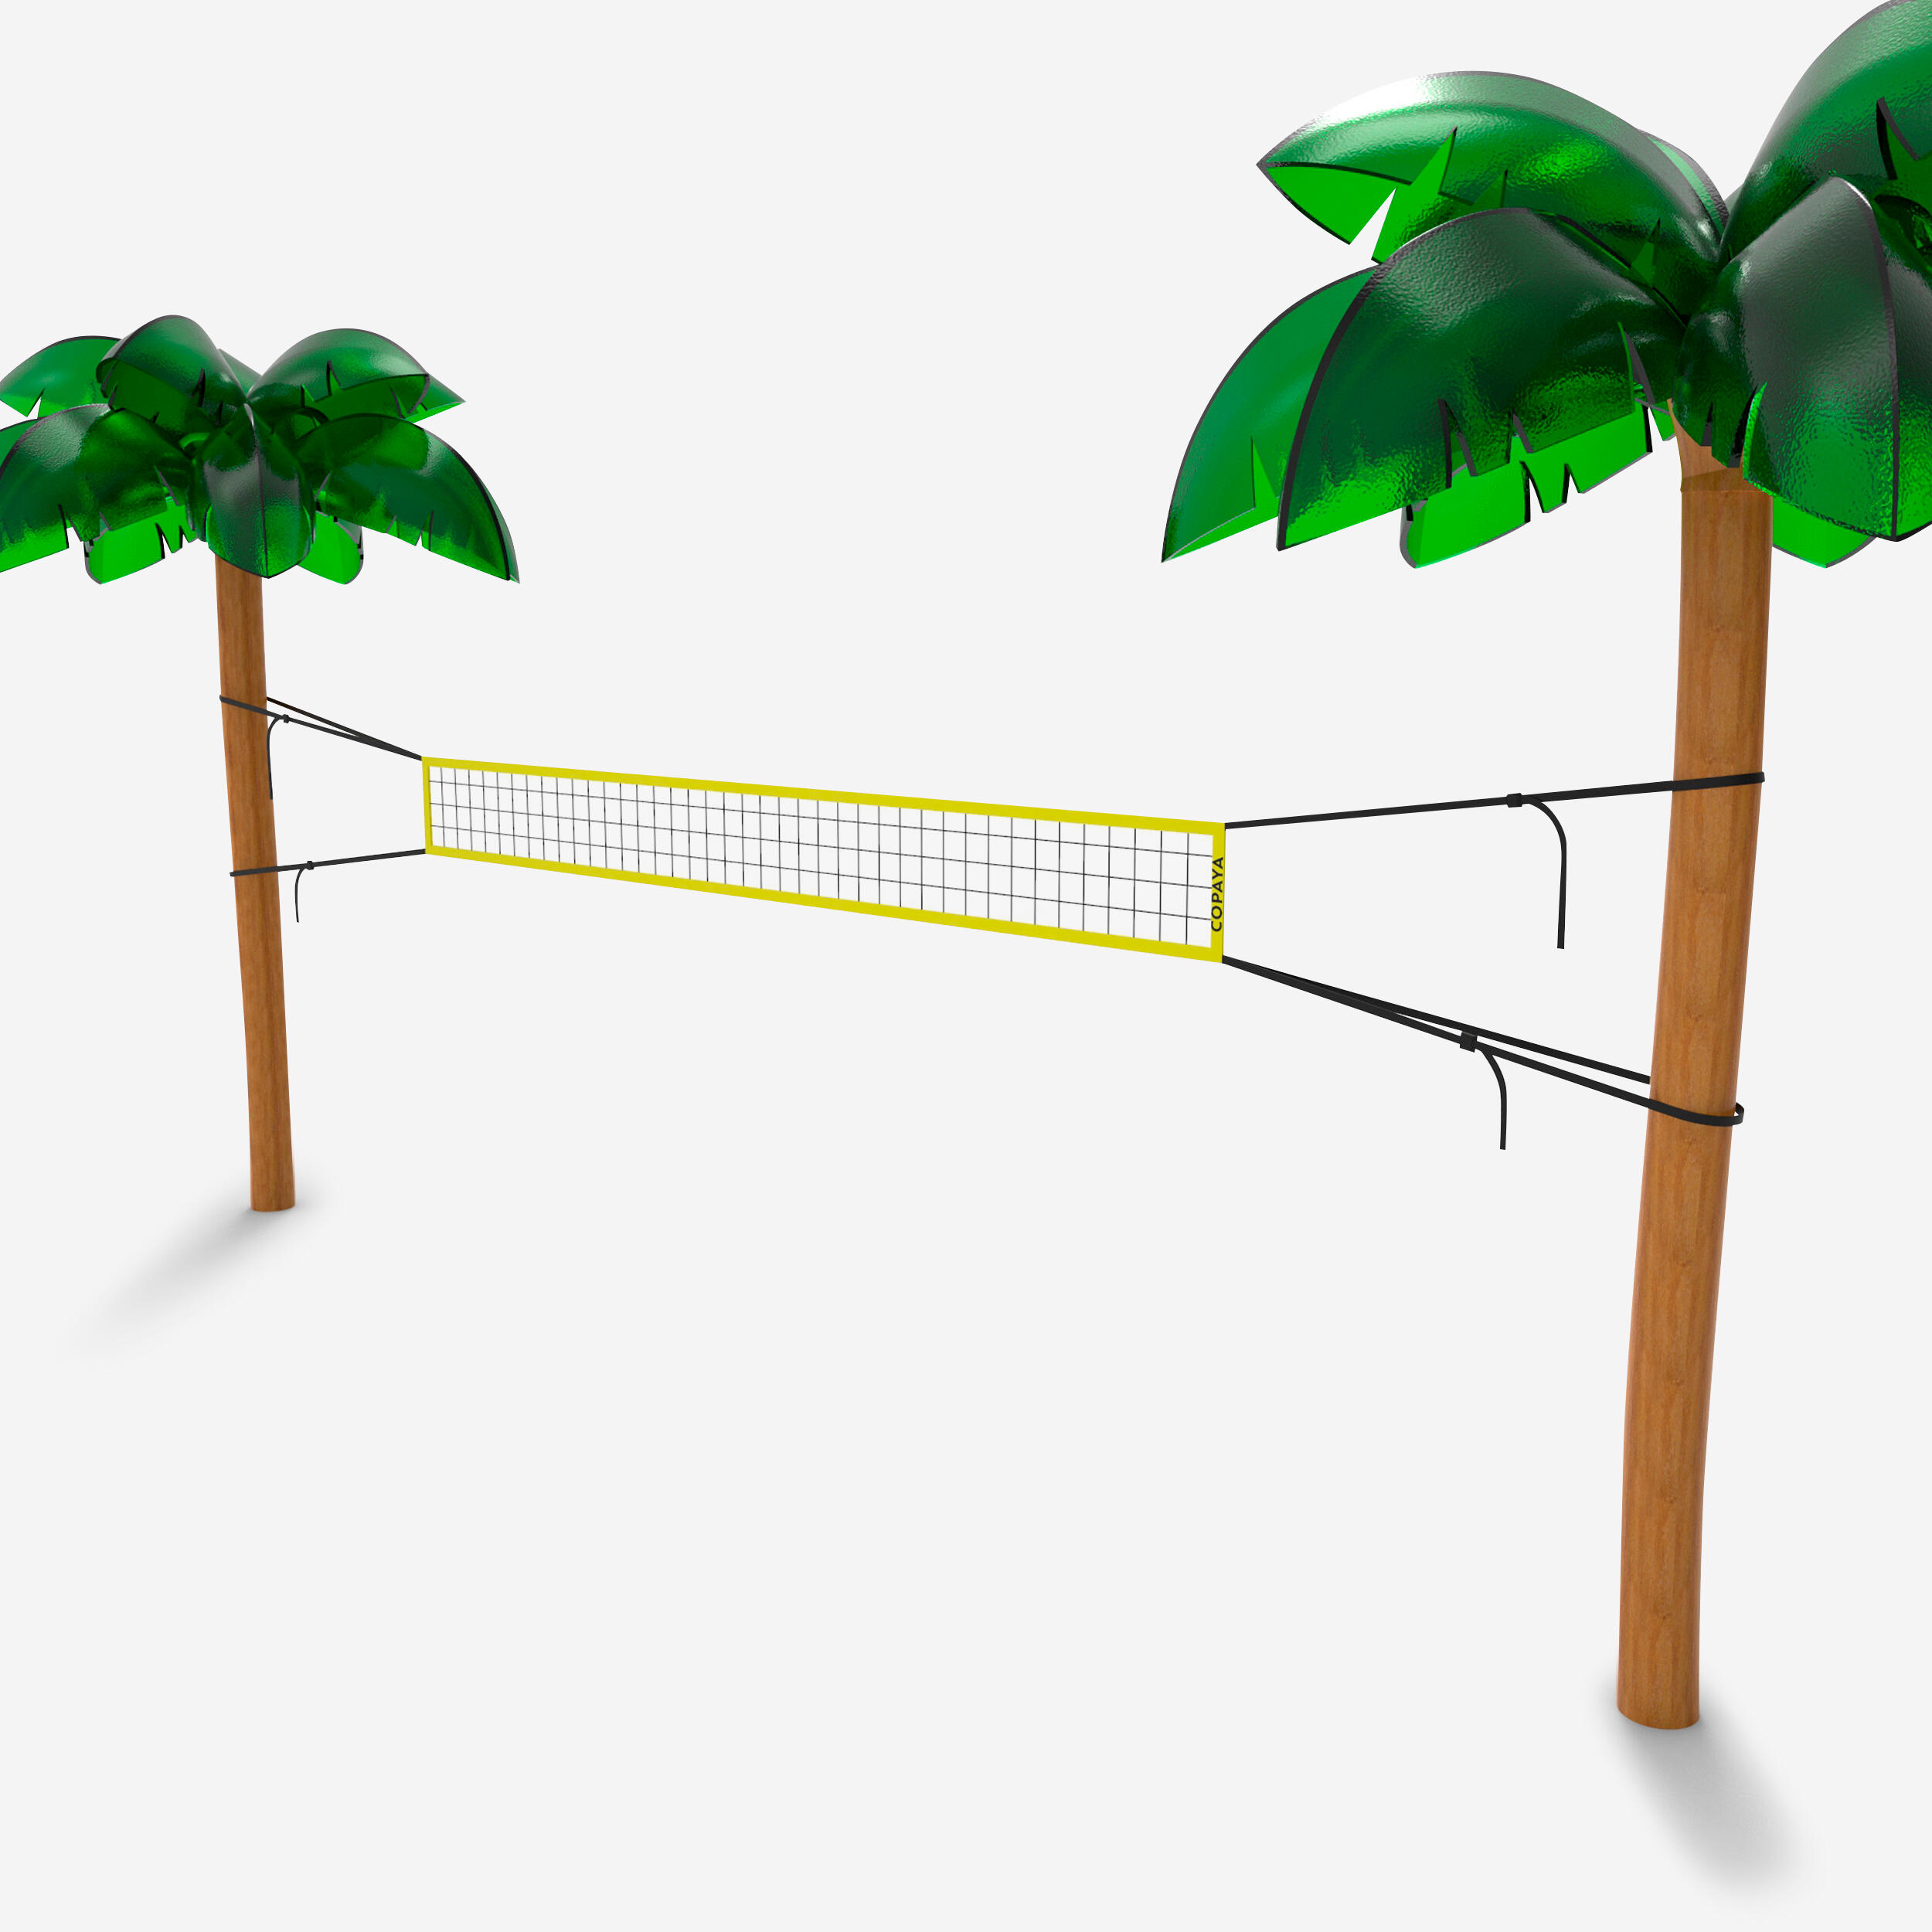 Beachvolleyballnetz 4 m x 0,4 m - BV100 gelb